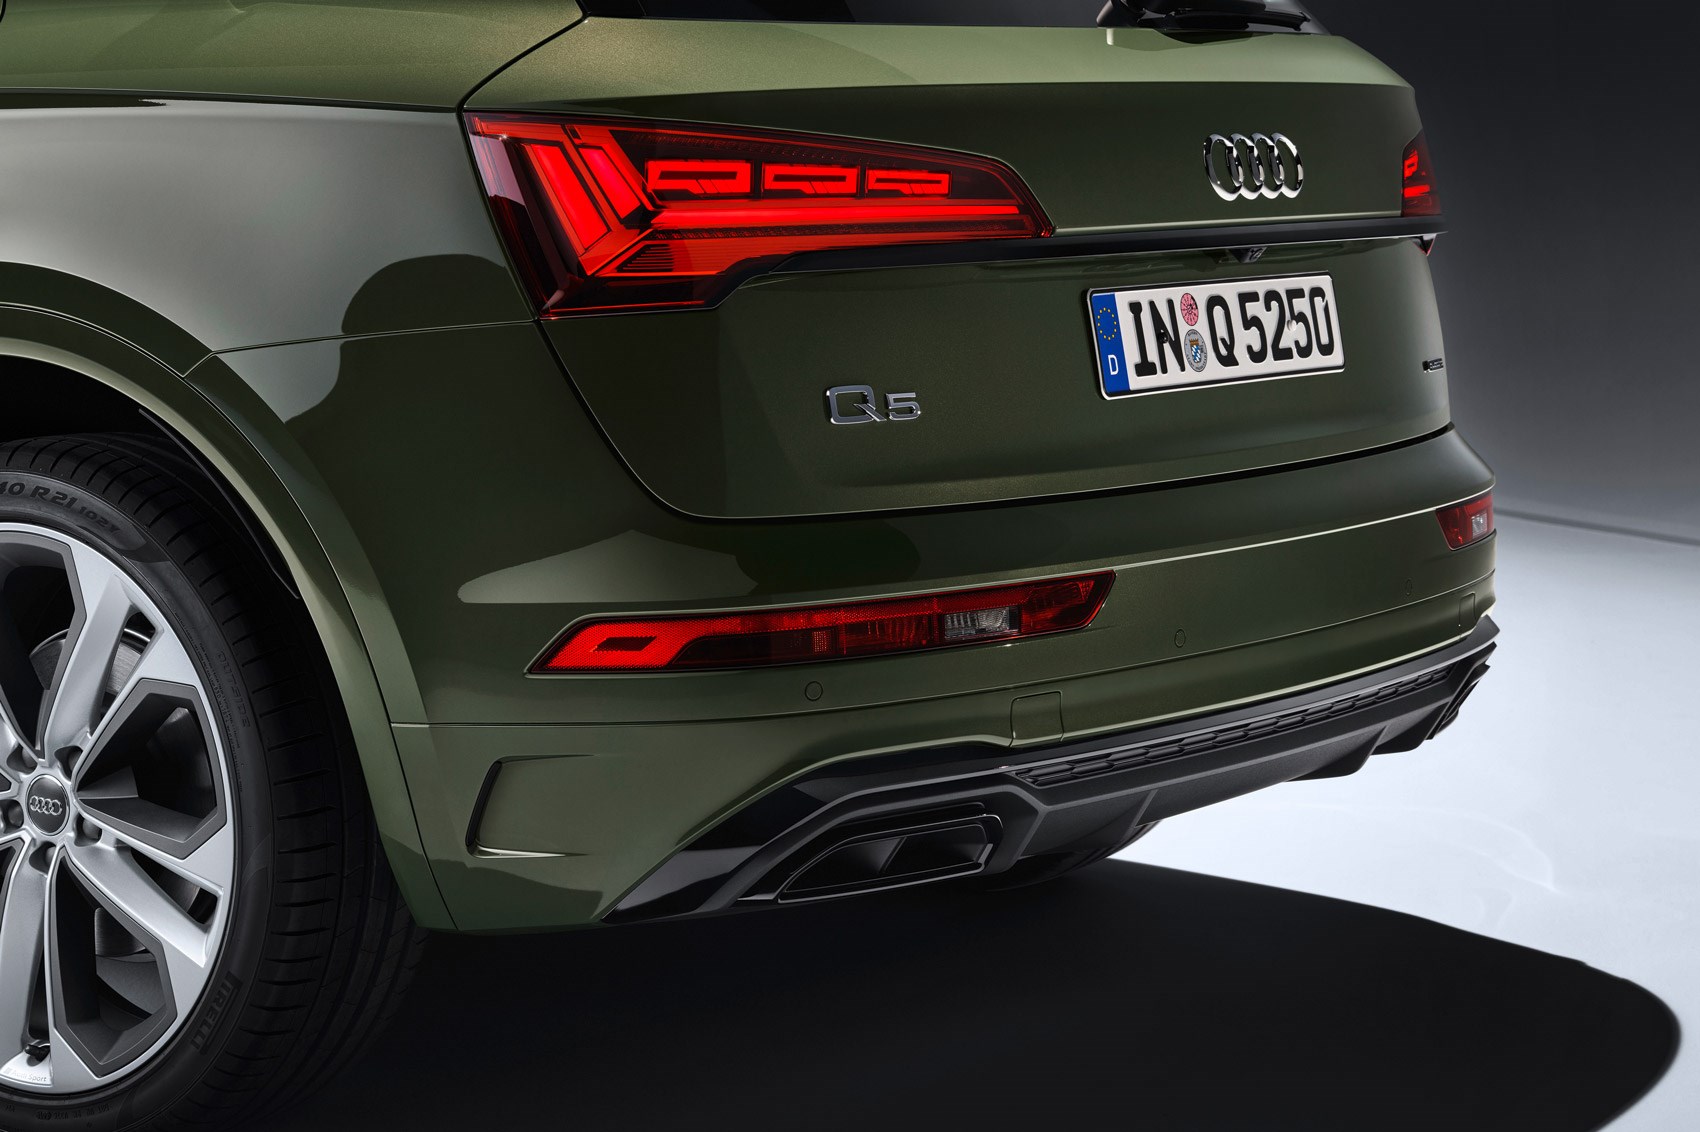 2020 Audi Q5 Revealed: Spec, Price & Release Date